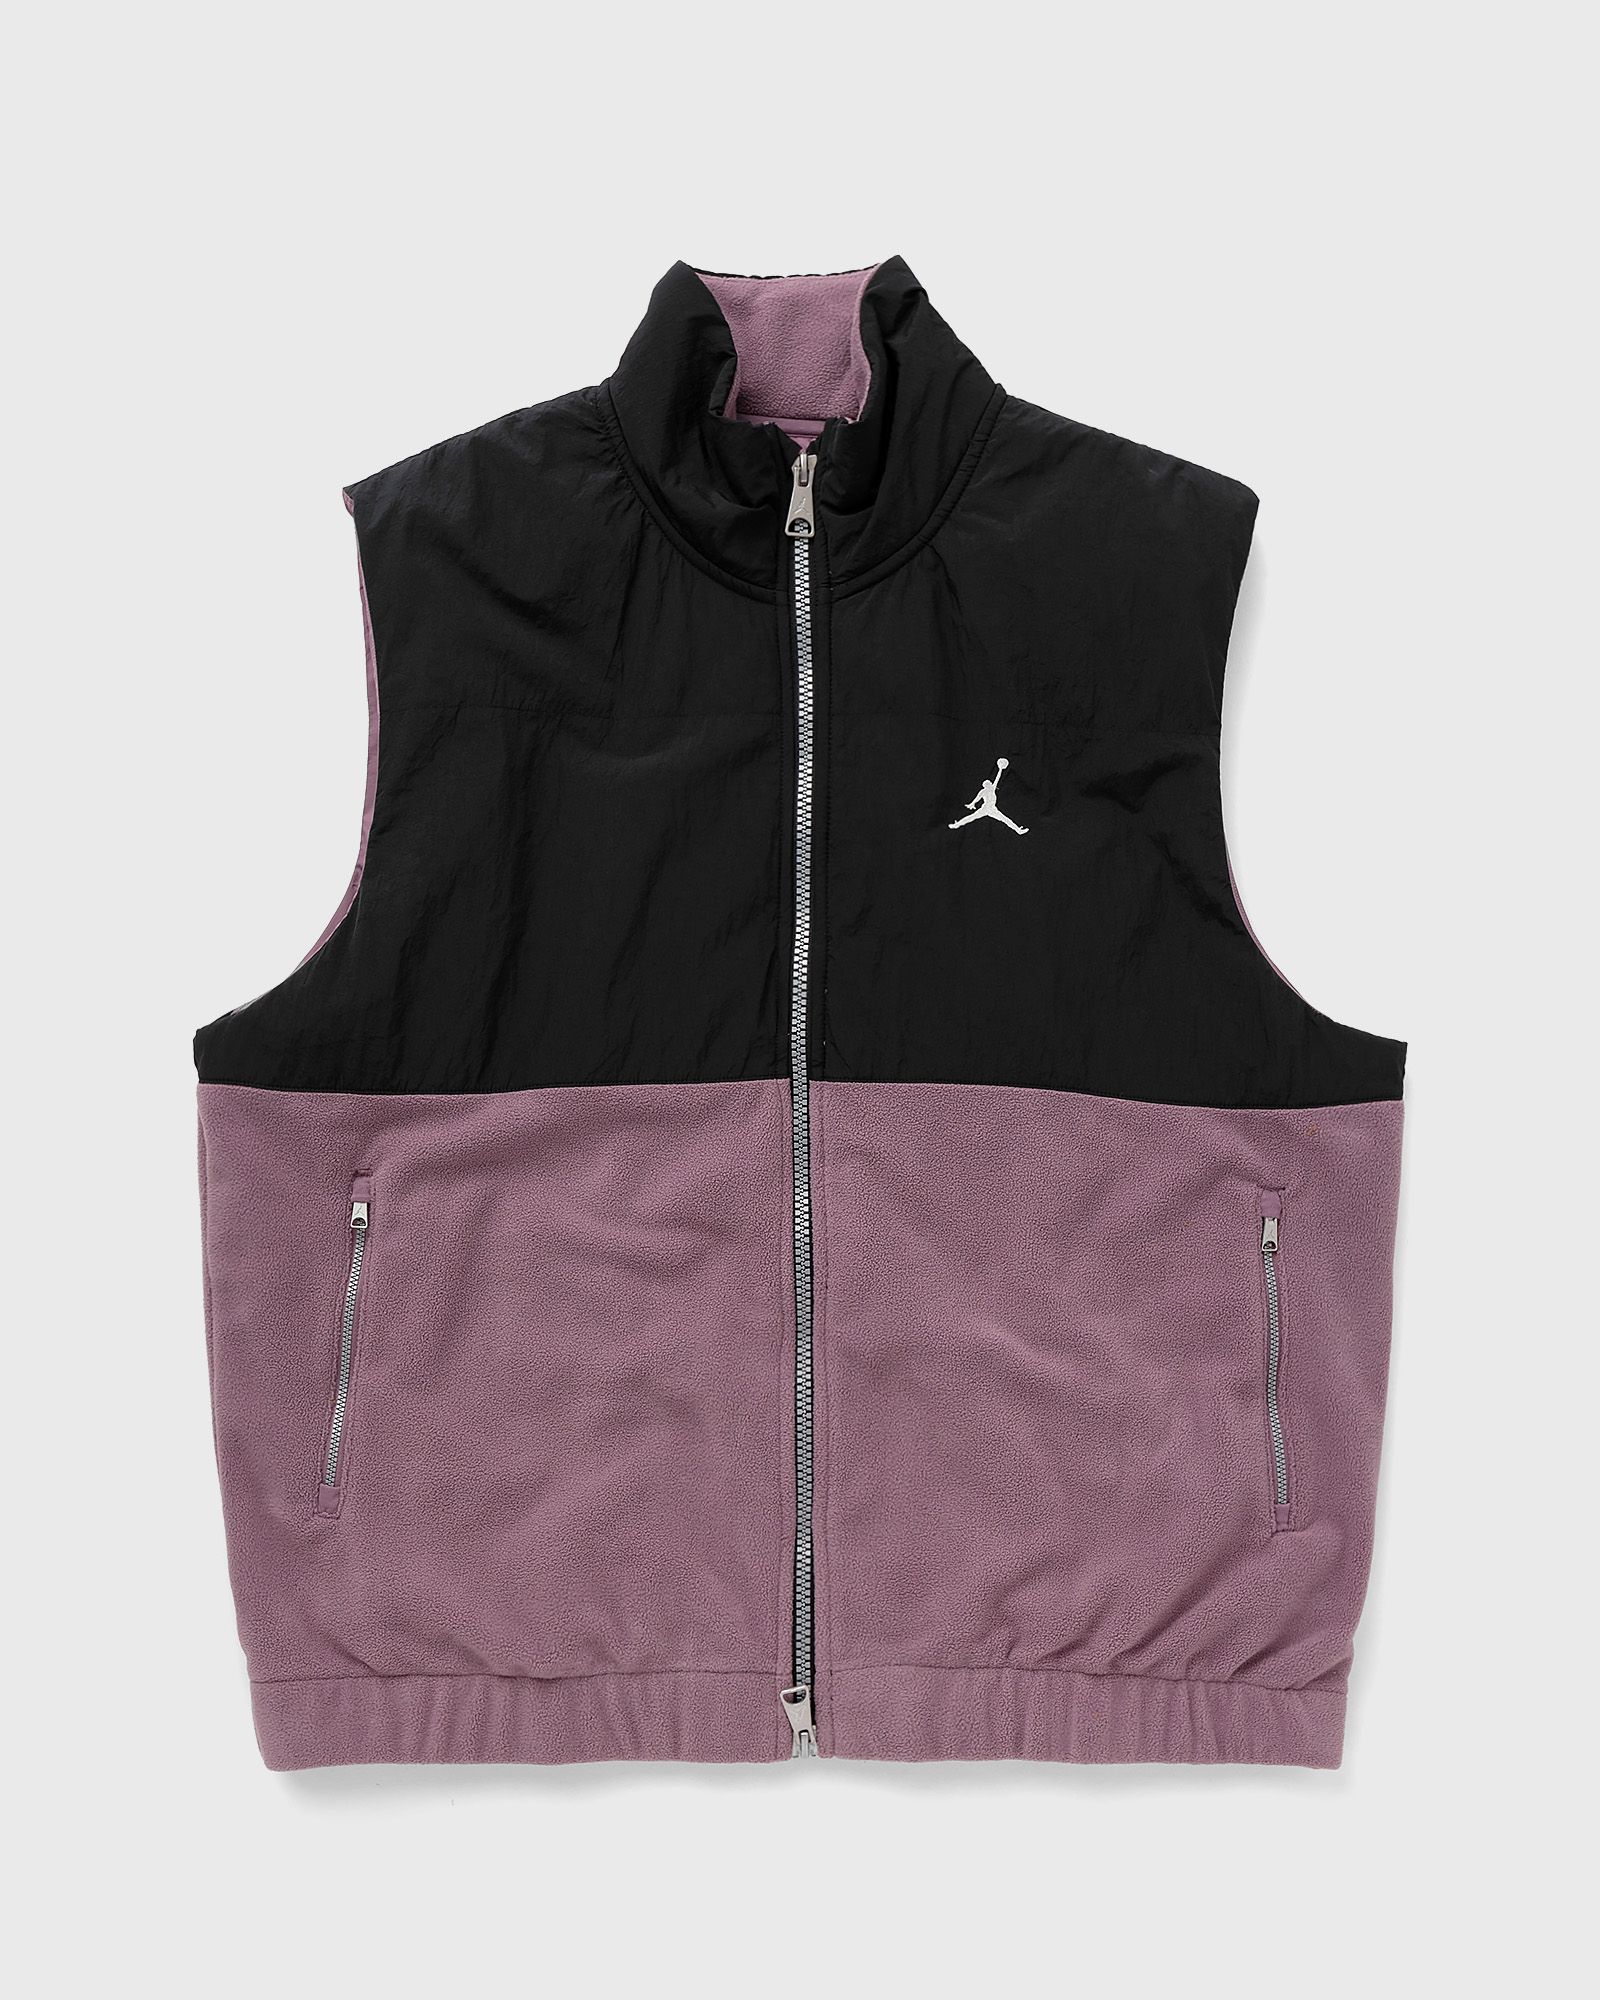 Jordan - essentials men's winter vest men vests black|purple in größe:xl